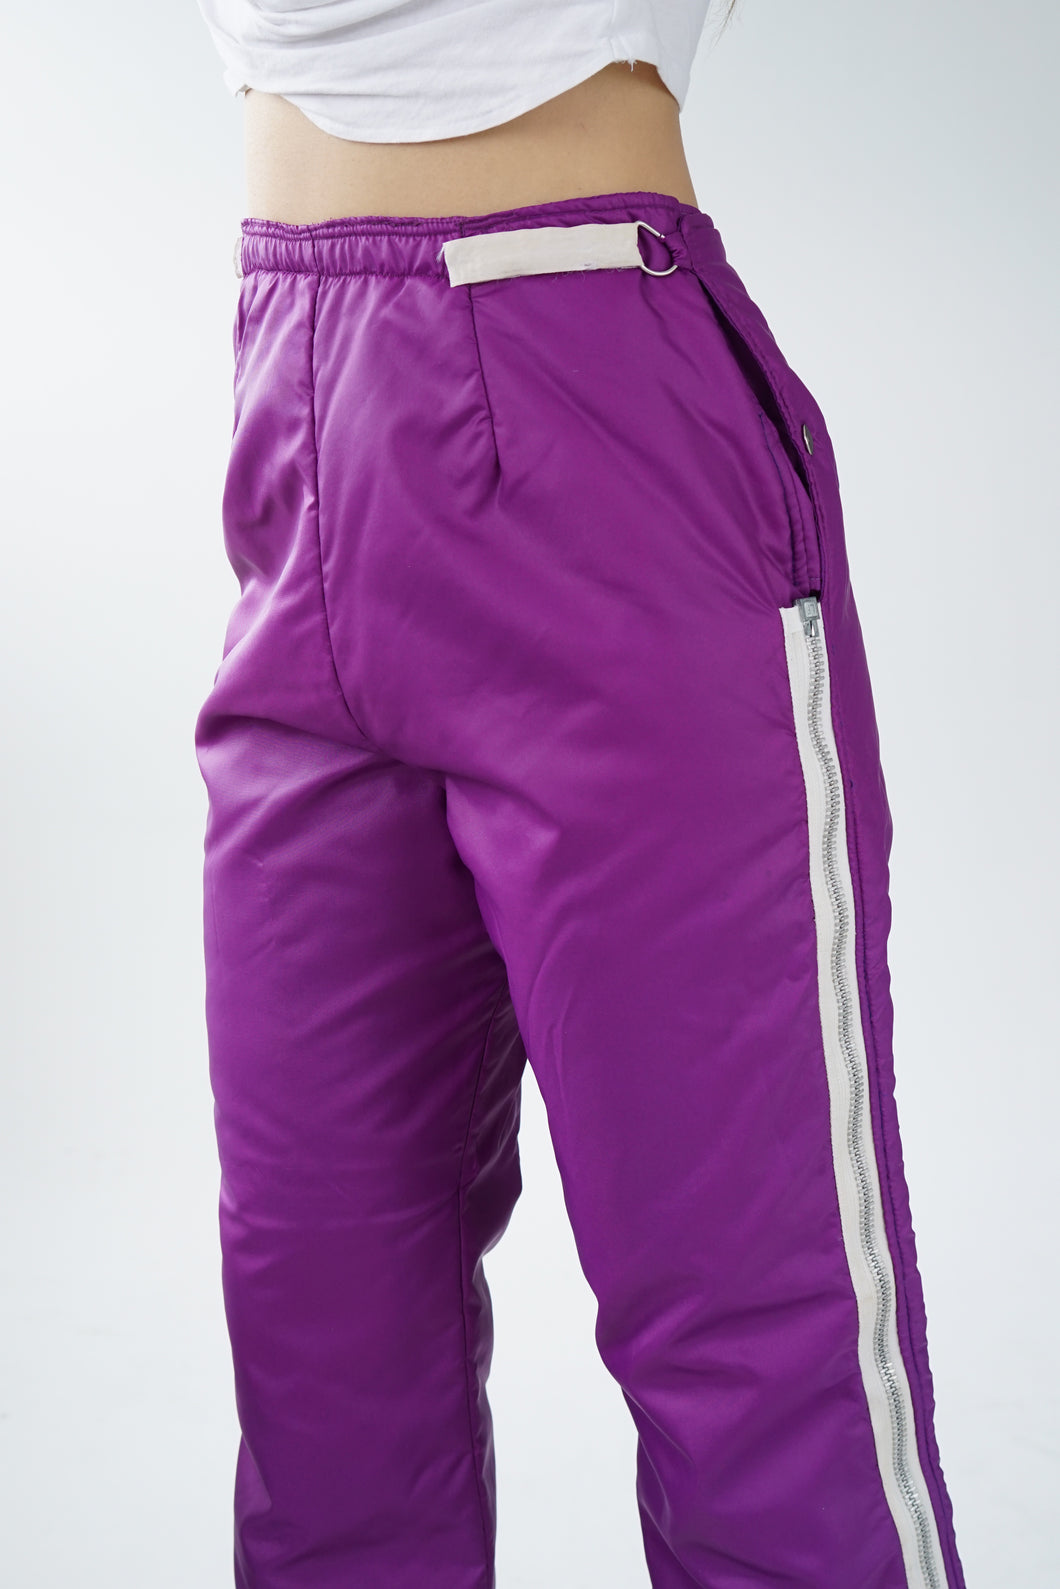 Pantalon de neige vintage 60s mauve avec gros zip pour femme taille 28